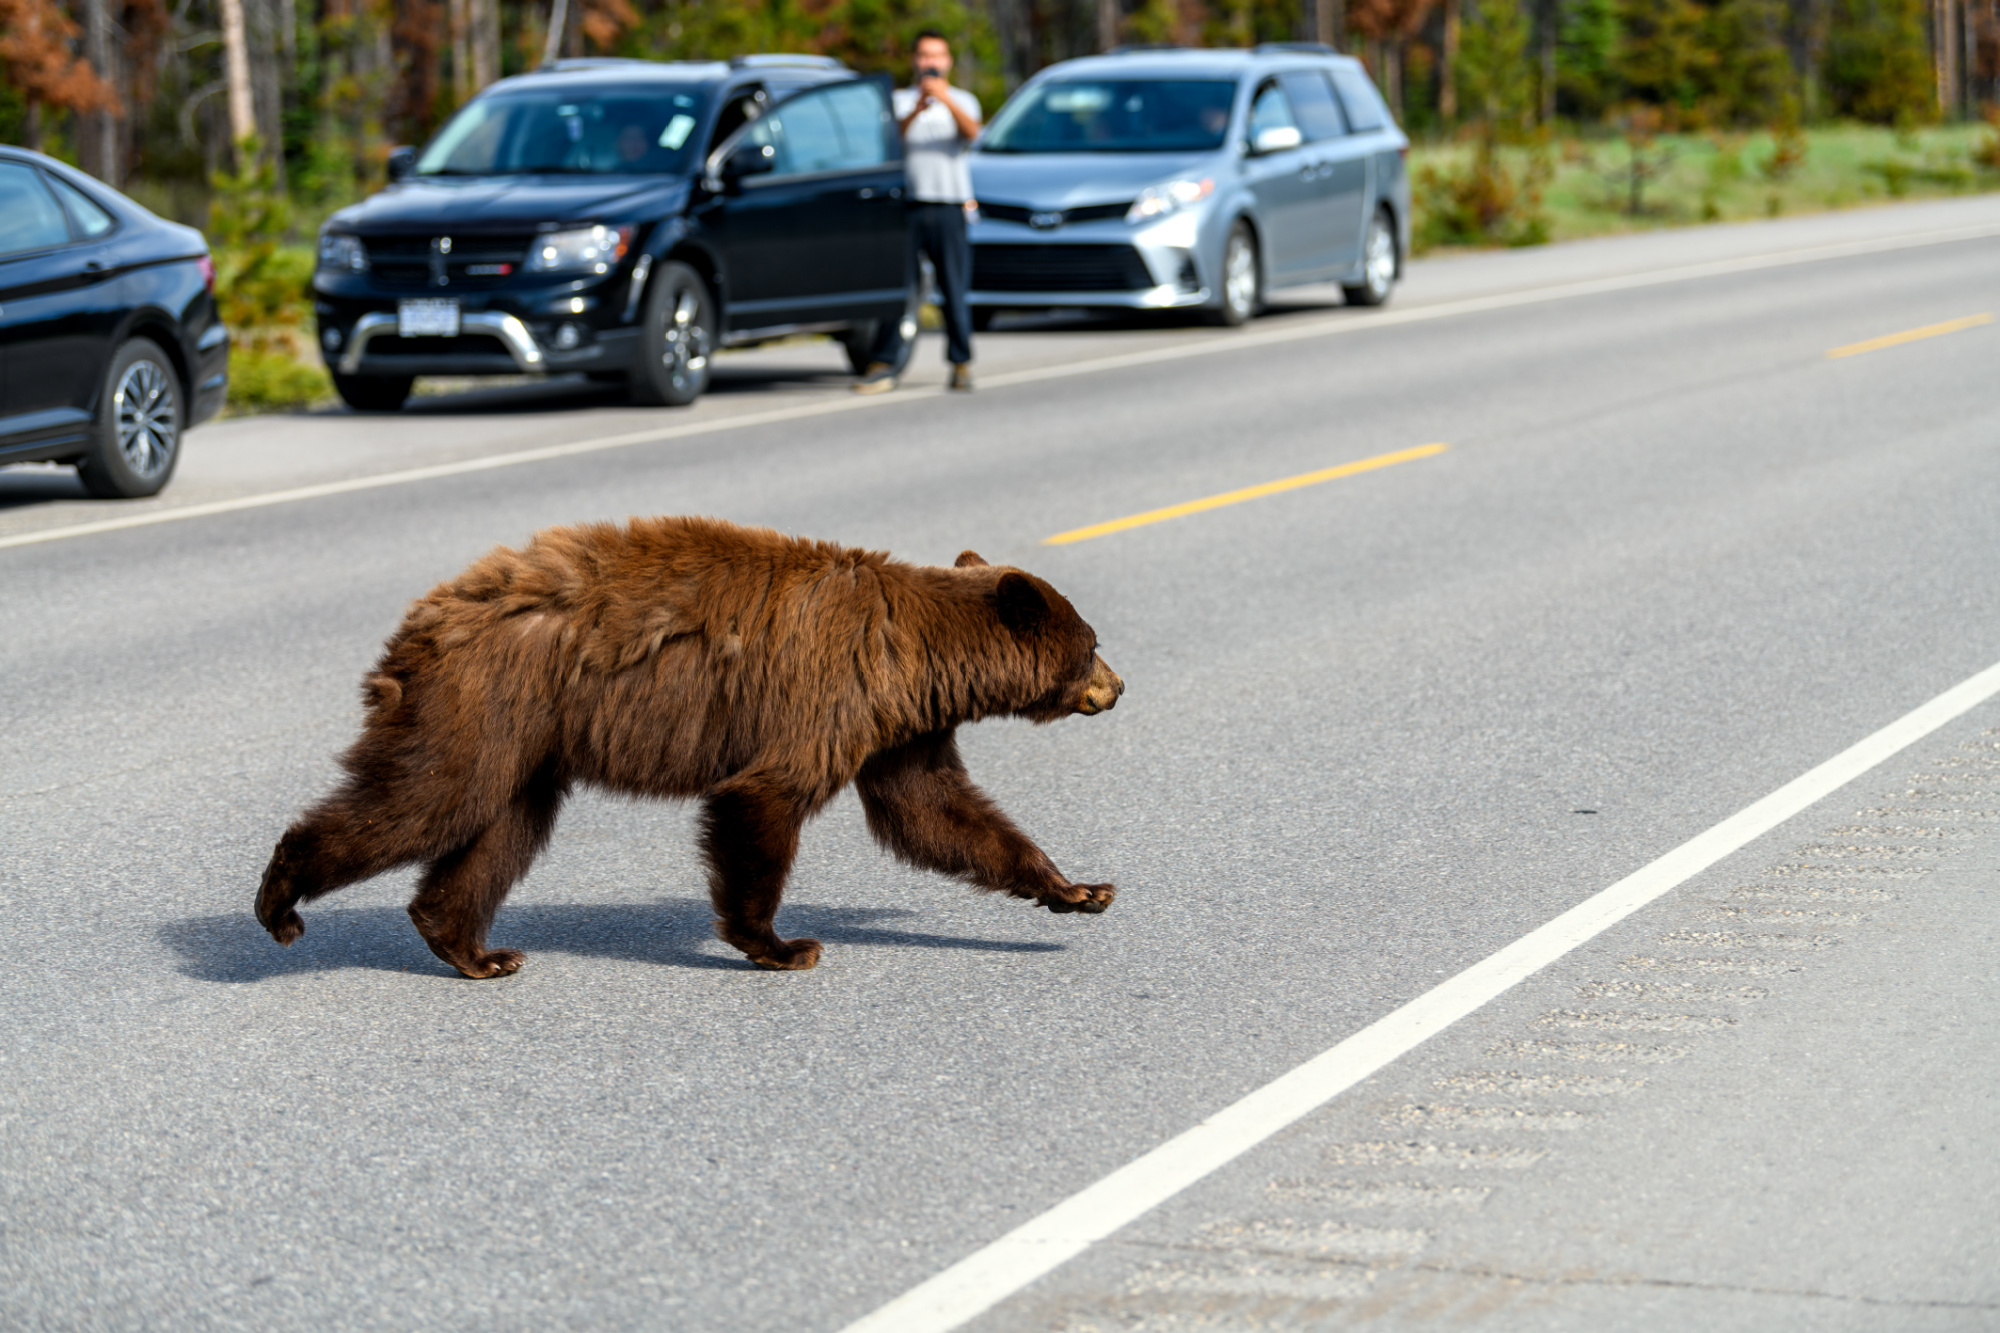 A black bear runs through traffic